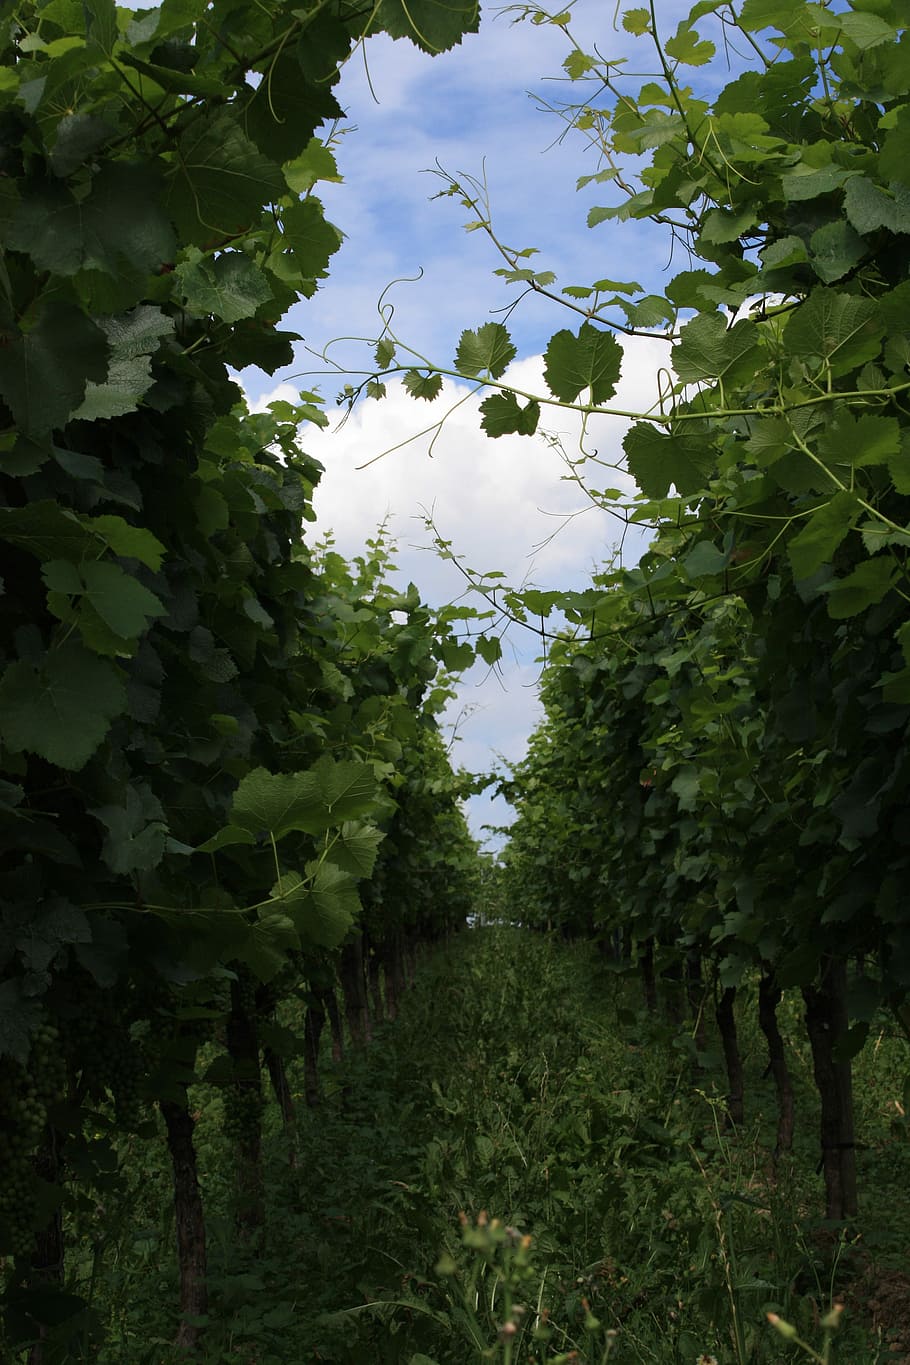 Vineyard, Wine, Vines, Pieces, Vine, pieces of vine, grapes, fruit, vineyards, grapevine